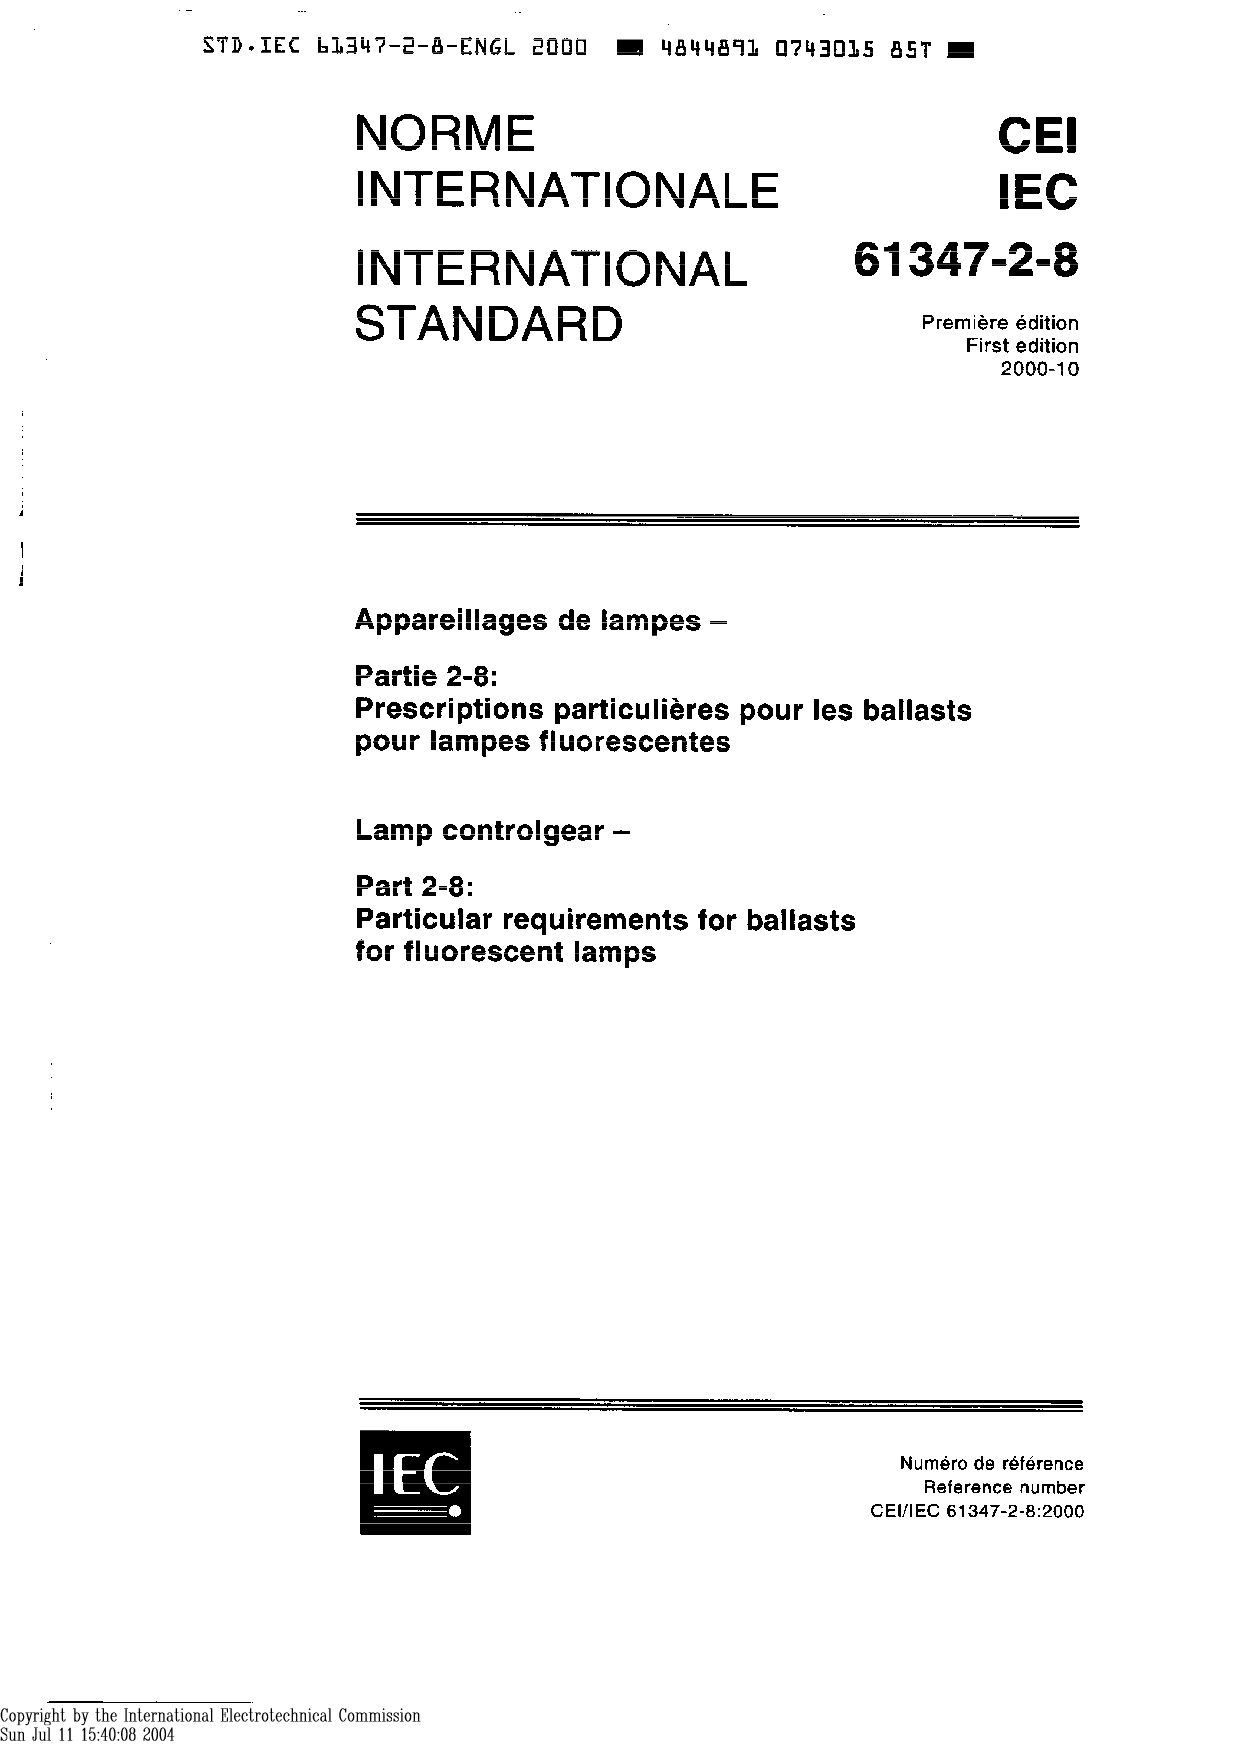 IEC 61347-2-8-2000